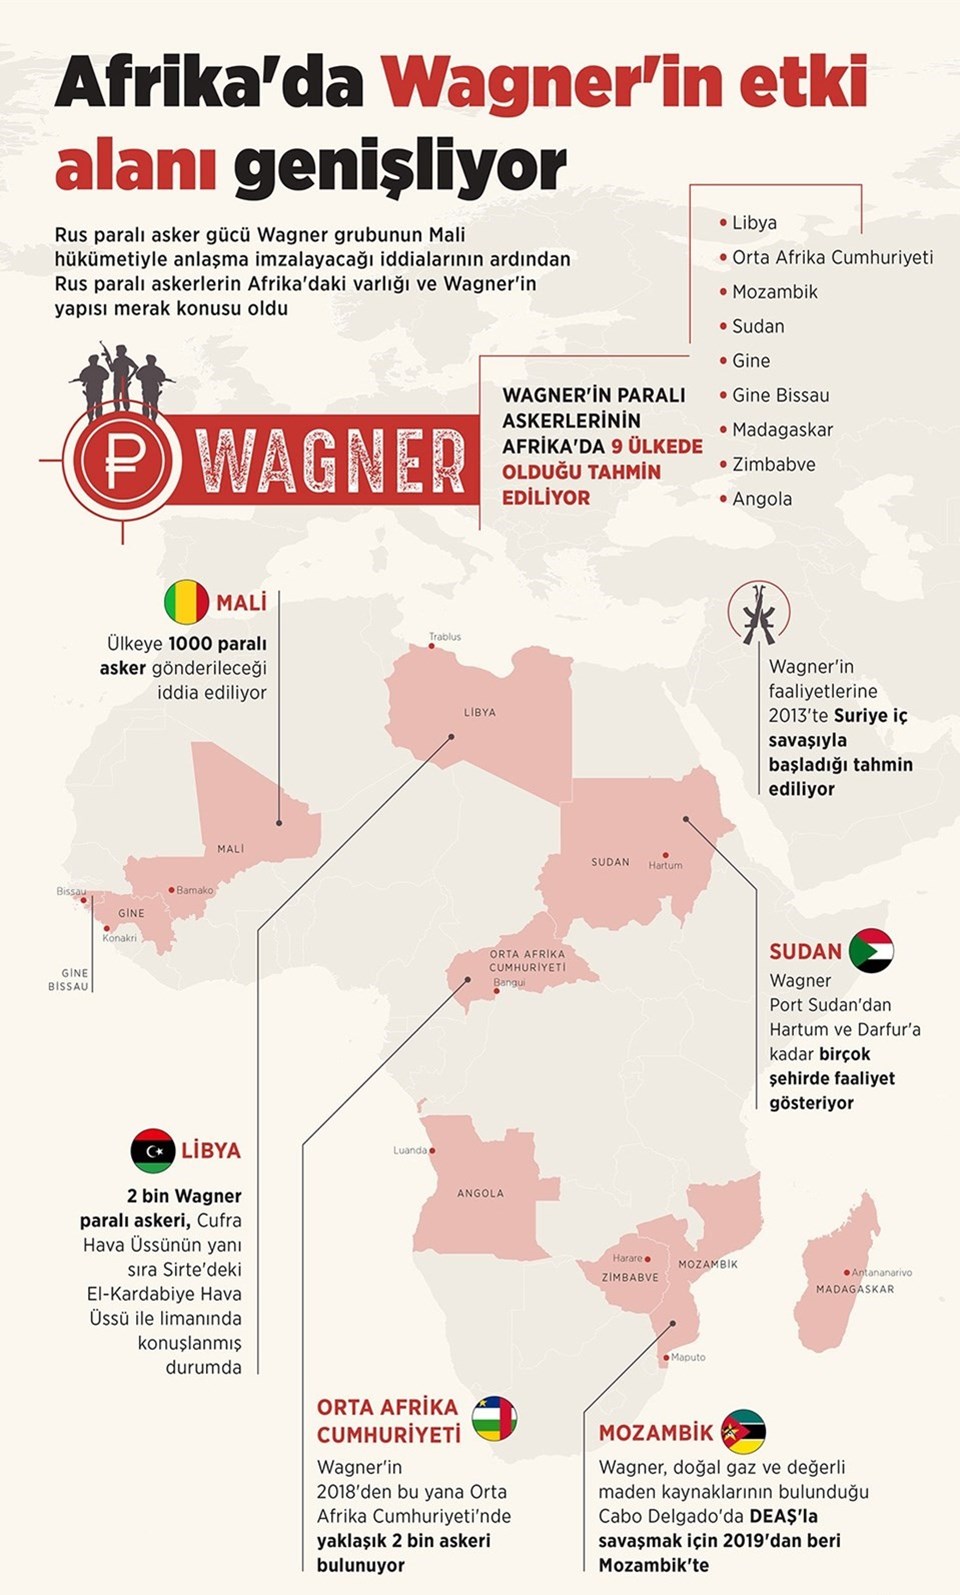 Rusya'nın gönüllülerden oluştuğu iddia edilen Wagner grubunun faaliyet gösterdiği ülkeler.